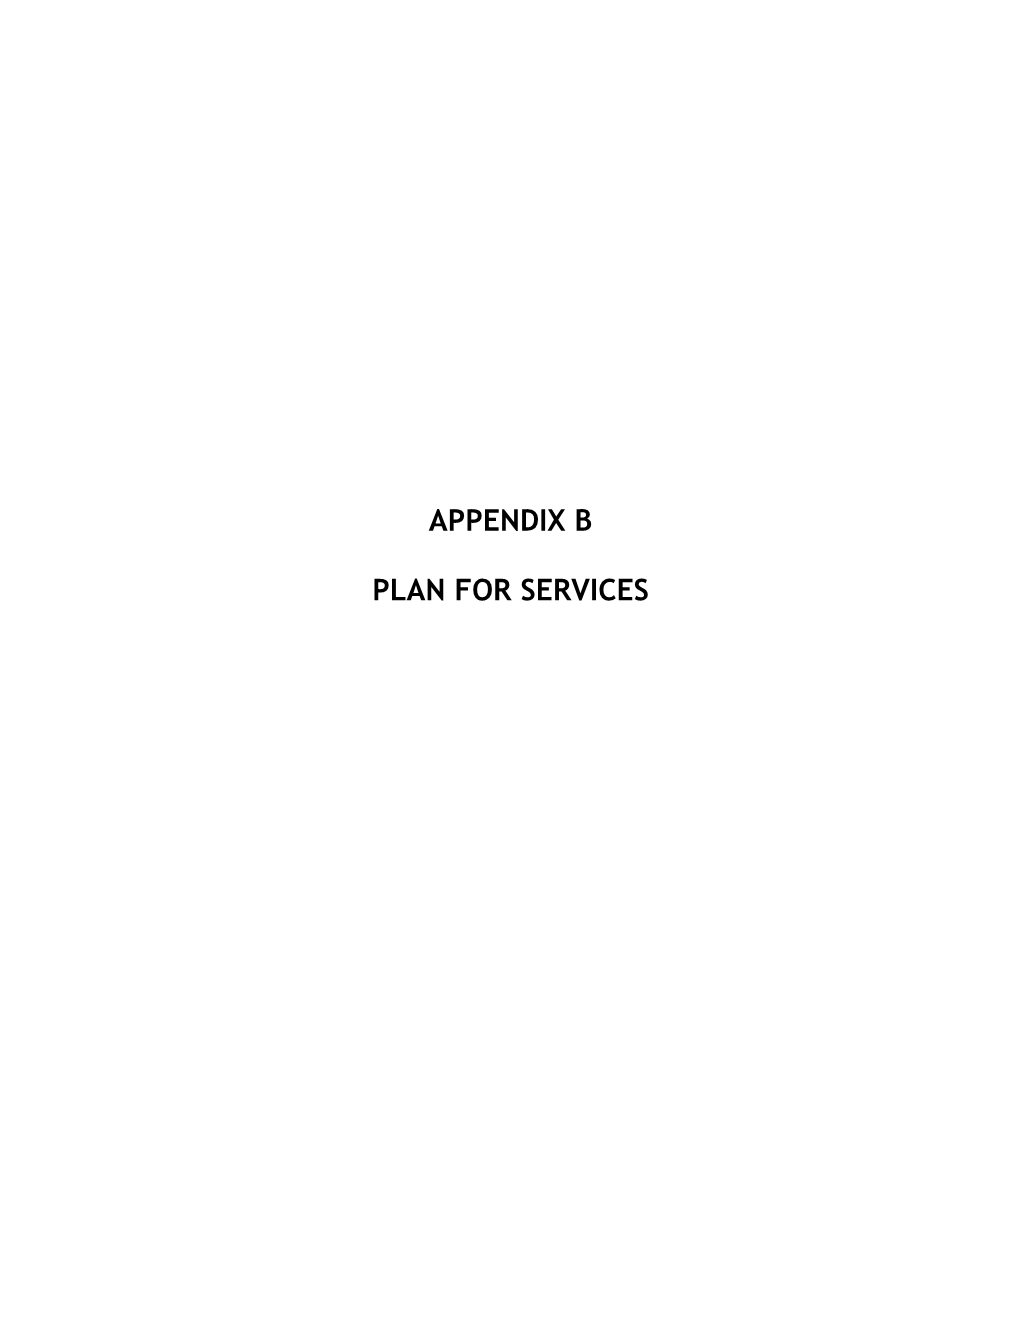 Appendix B Plan for Services